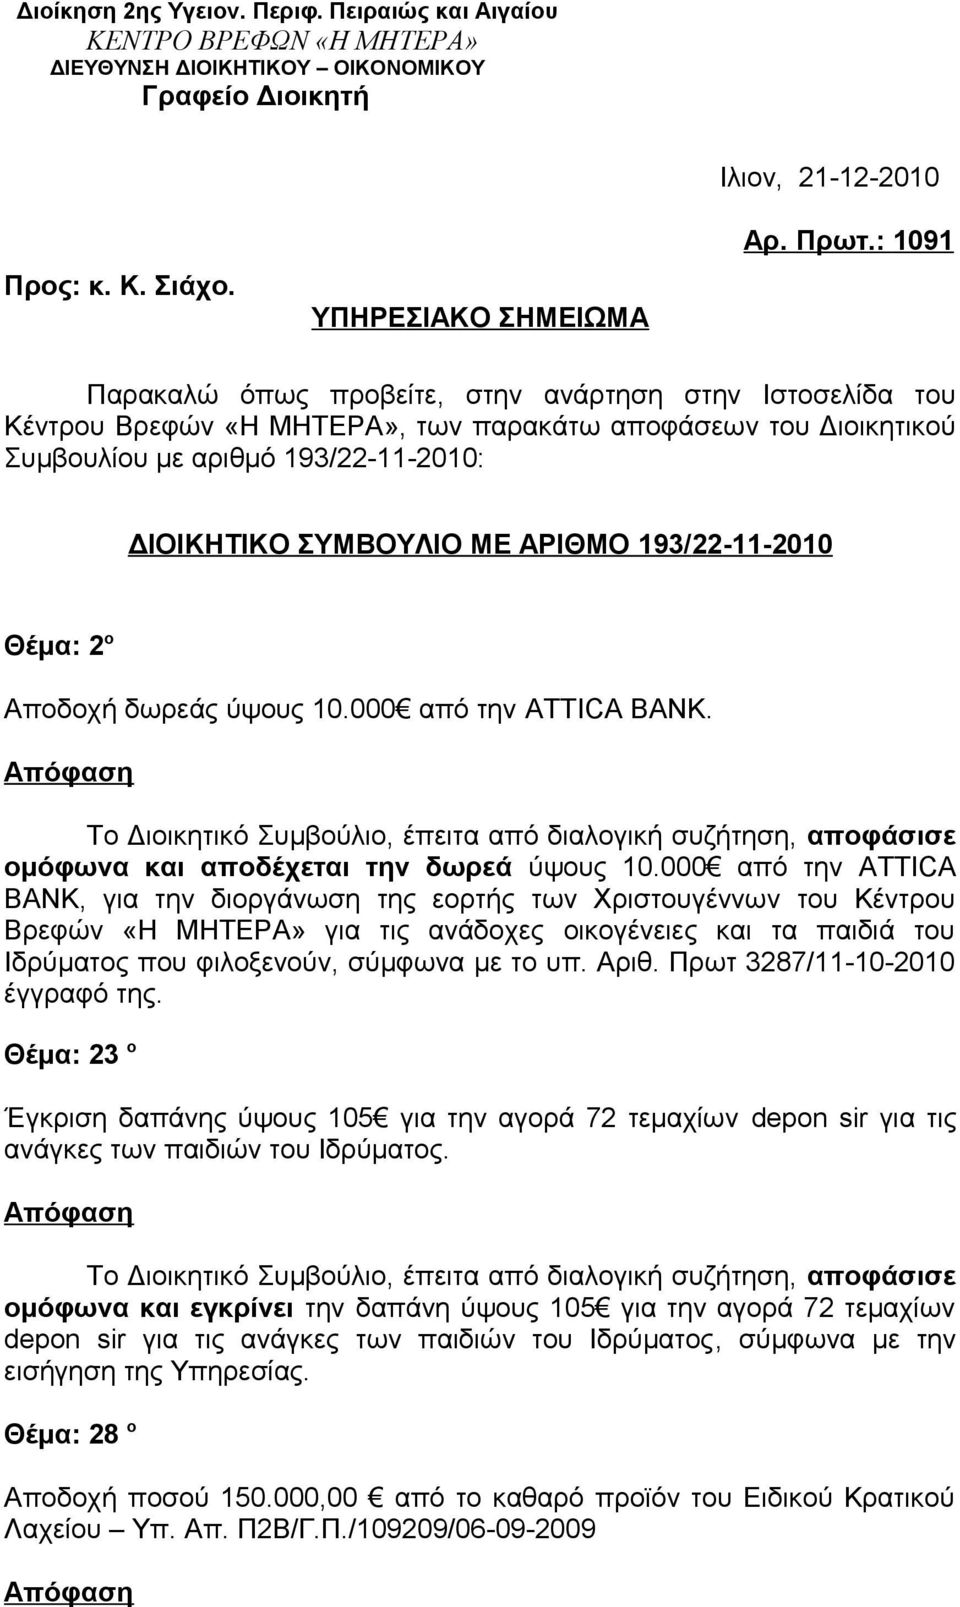 193/22-11-2010 Θέμα: 2 ο Αποδοχή δωρεάς ύψους 10.000 από την ATTICA BANK. ομόφωνα και αποδέχεται την δωρεά ύψους 10.